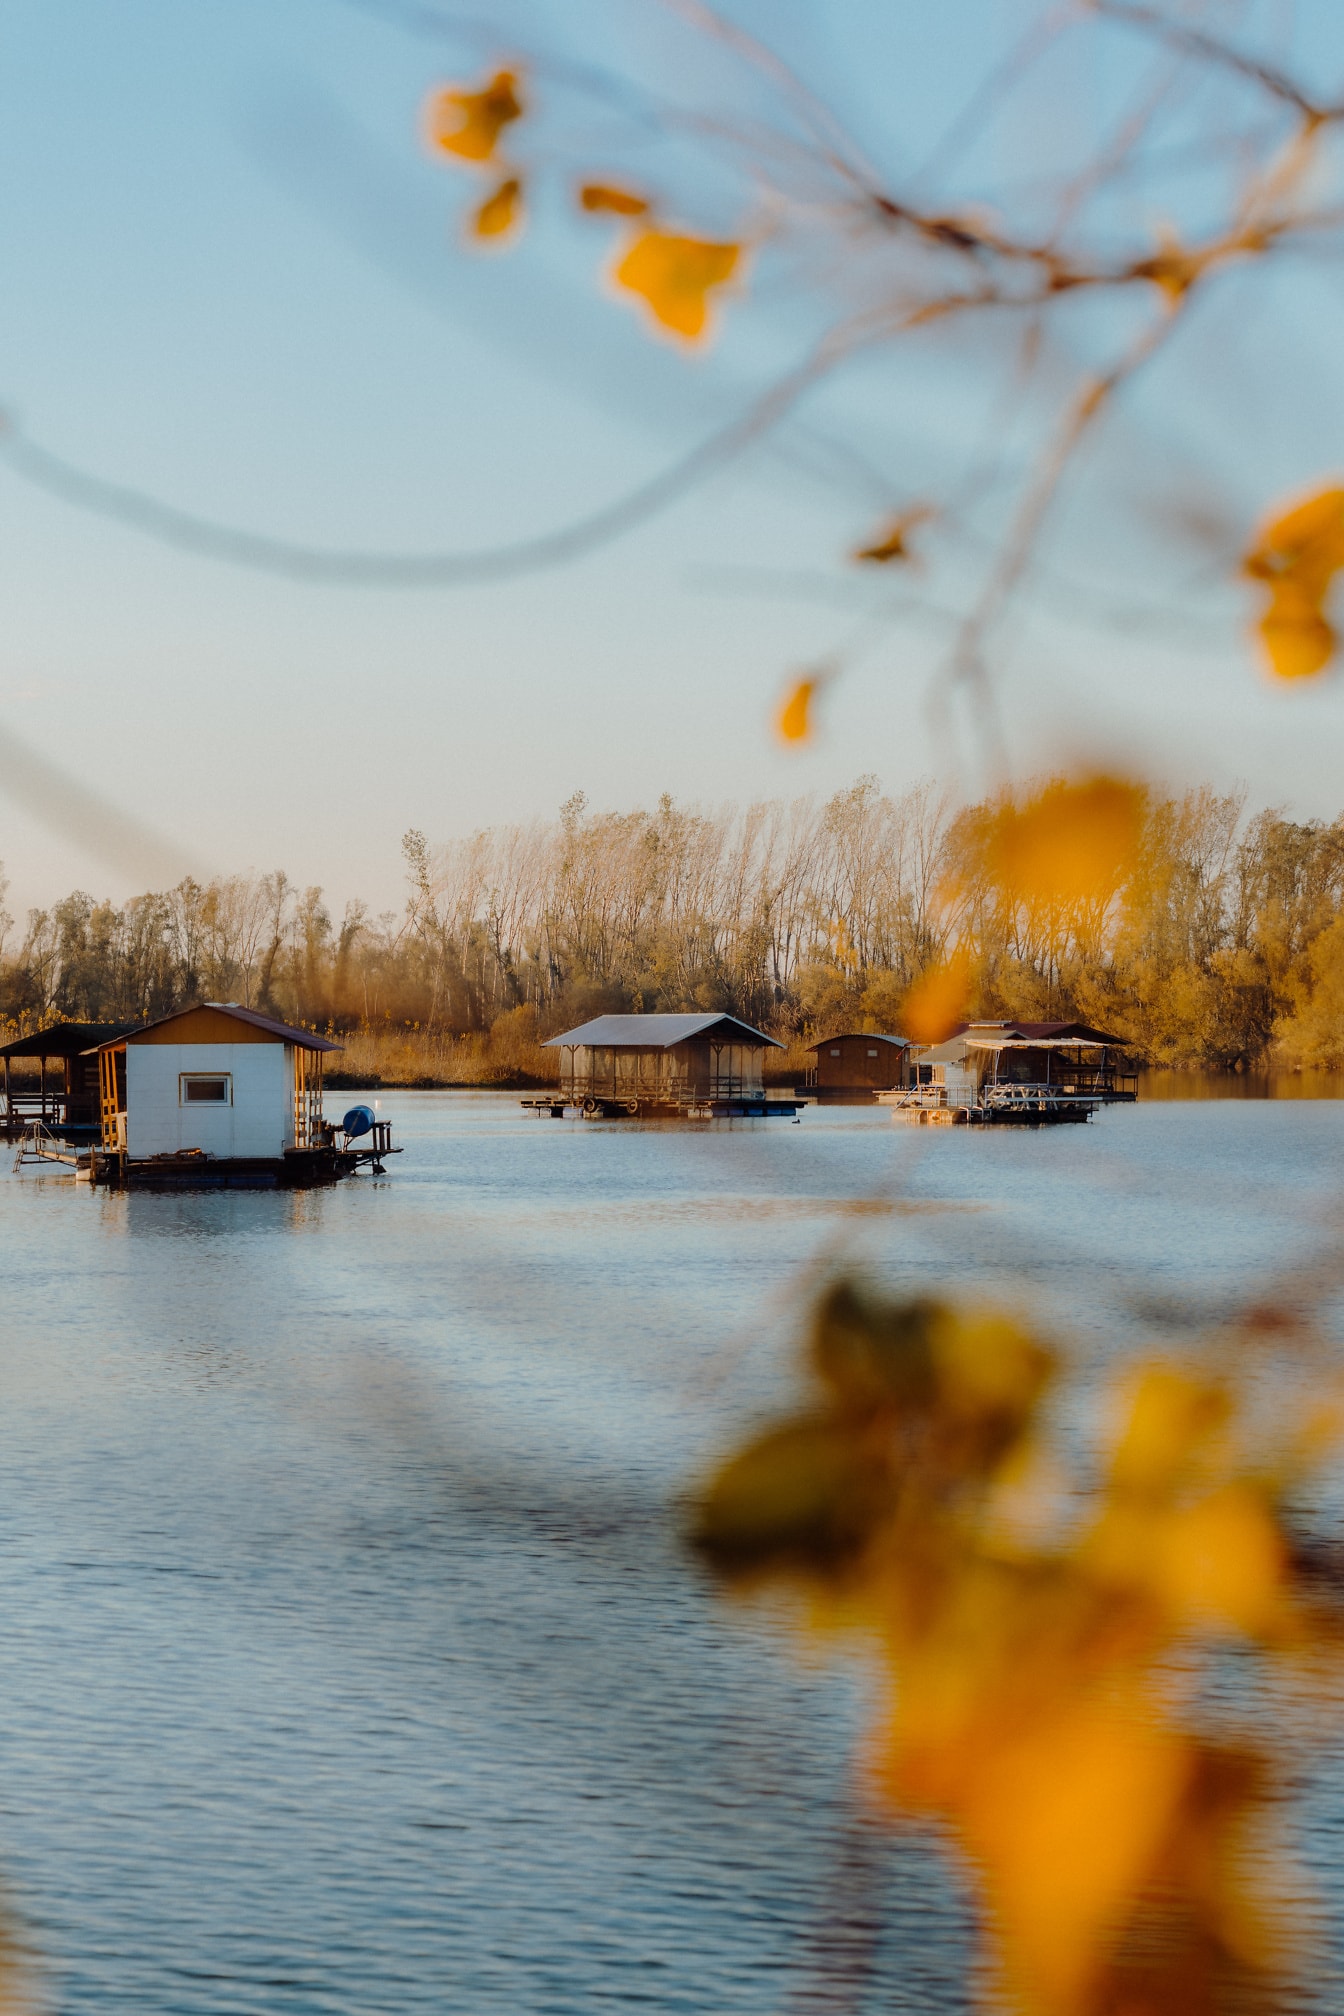 Къщи на плаващи салове в езеро Тиквара край река Дунав